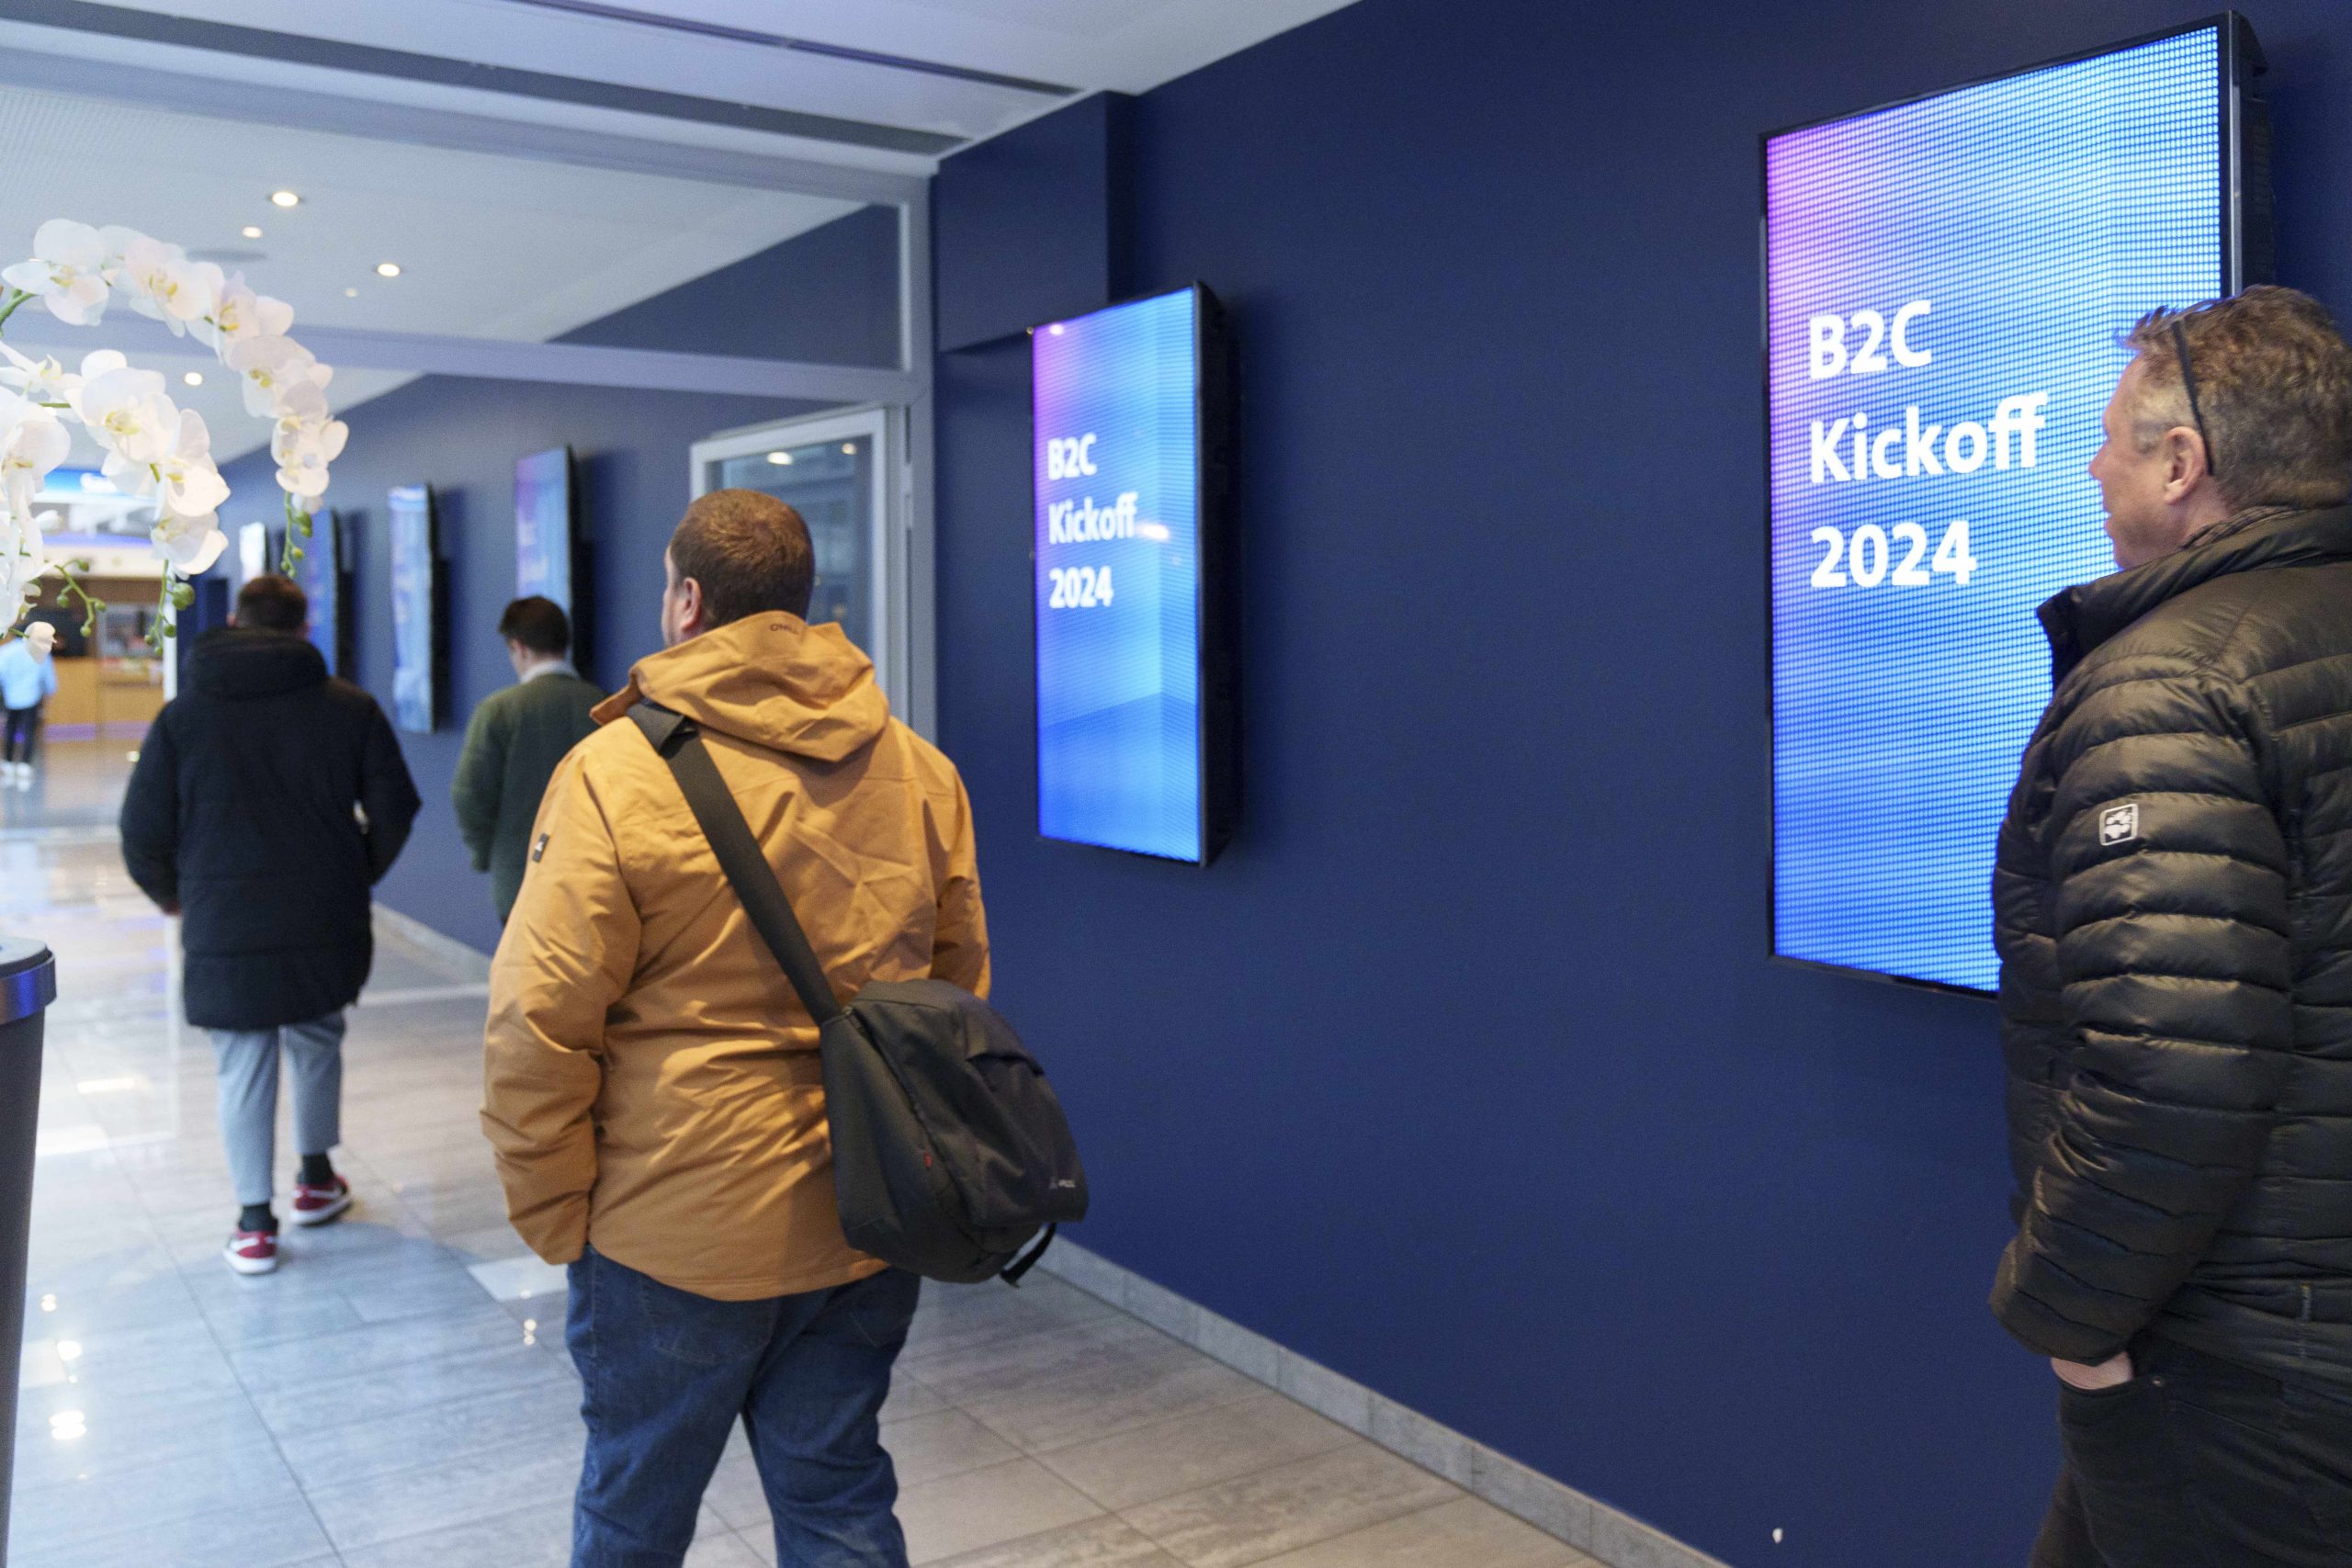 Besucher betrachten eine digitale Werbetafel mit der Aufschrift "B2C Kickoff 2024" im Kinofoyer.